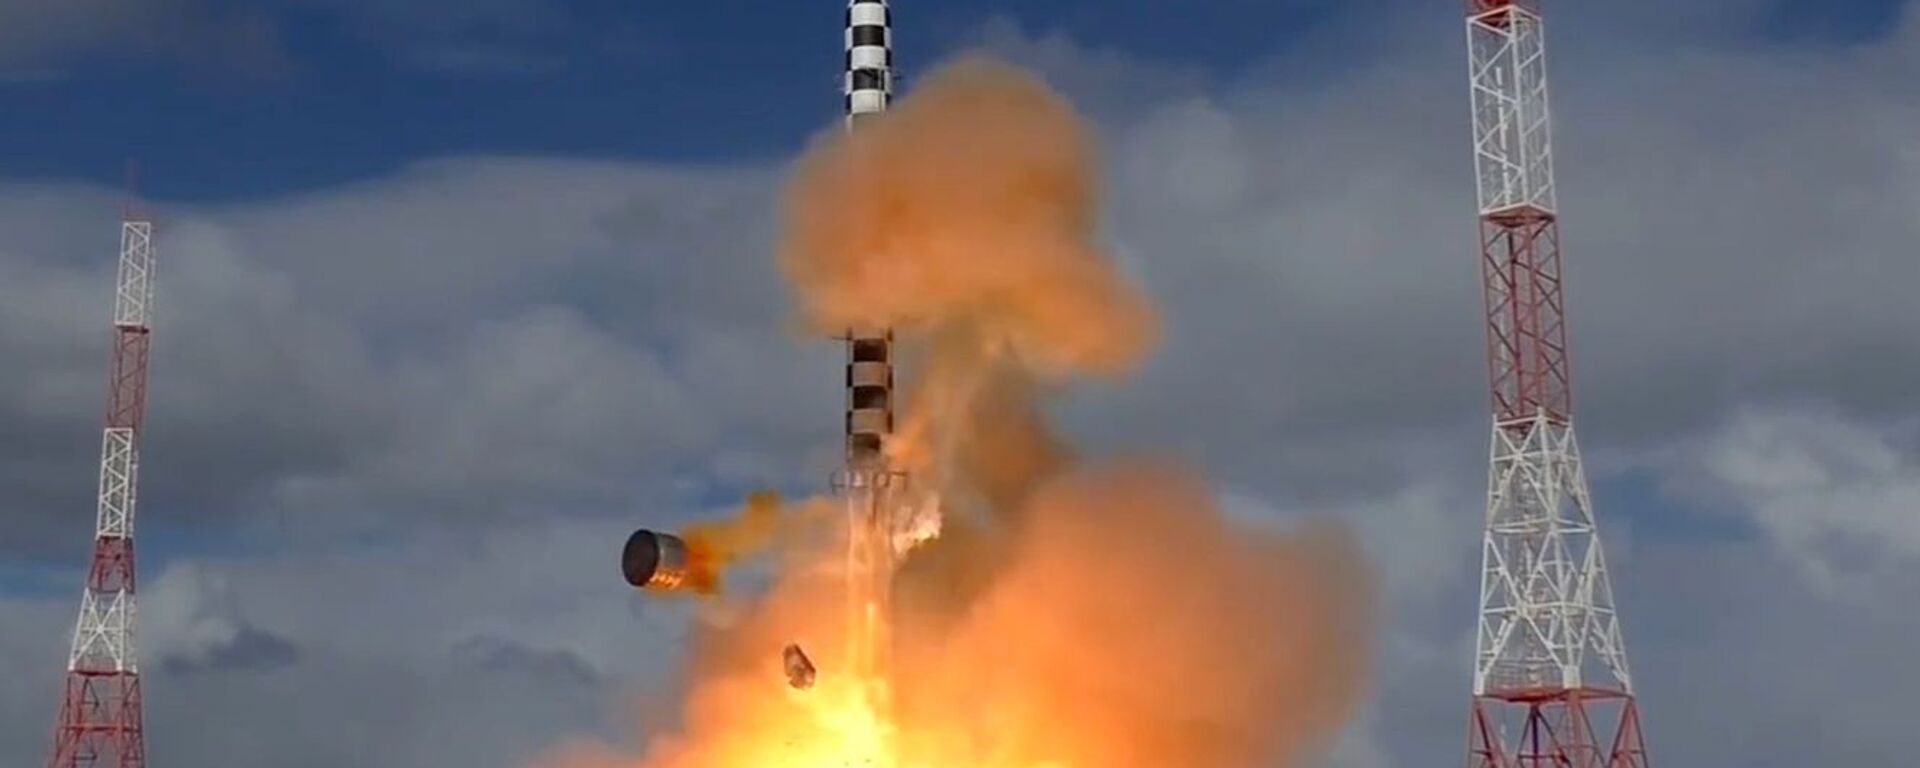 Запуск тяжелой межконтинентальной баллистической ракеты Сармат к» - Sputnik Узбекистан, 1920, 06.01.2021